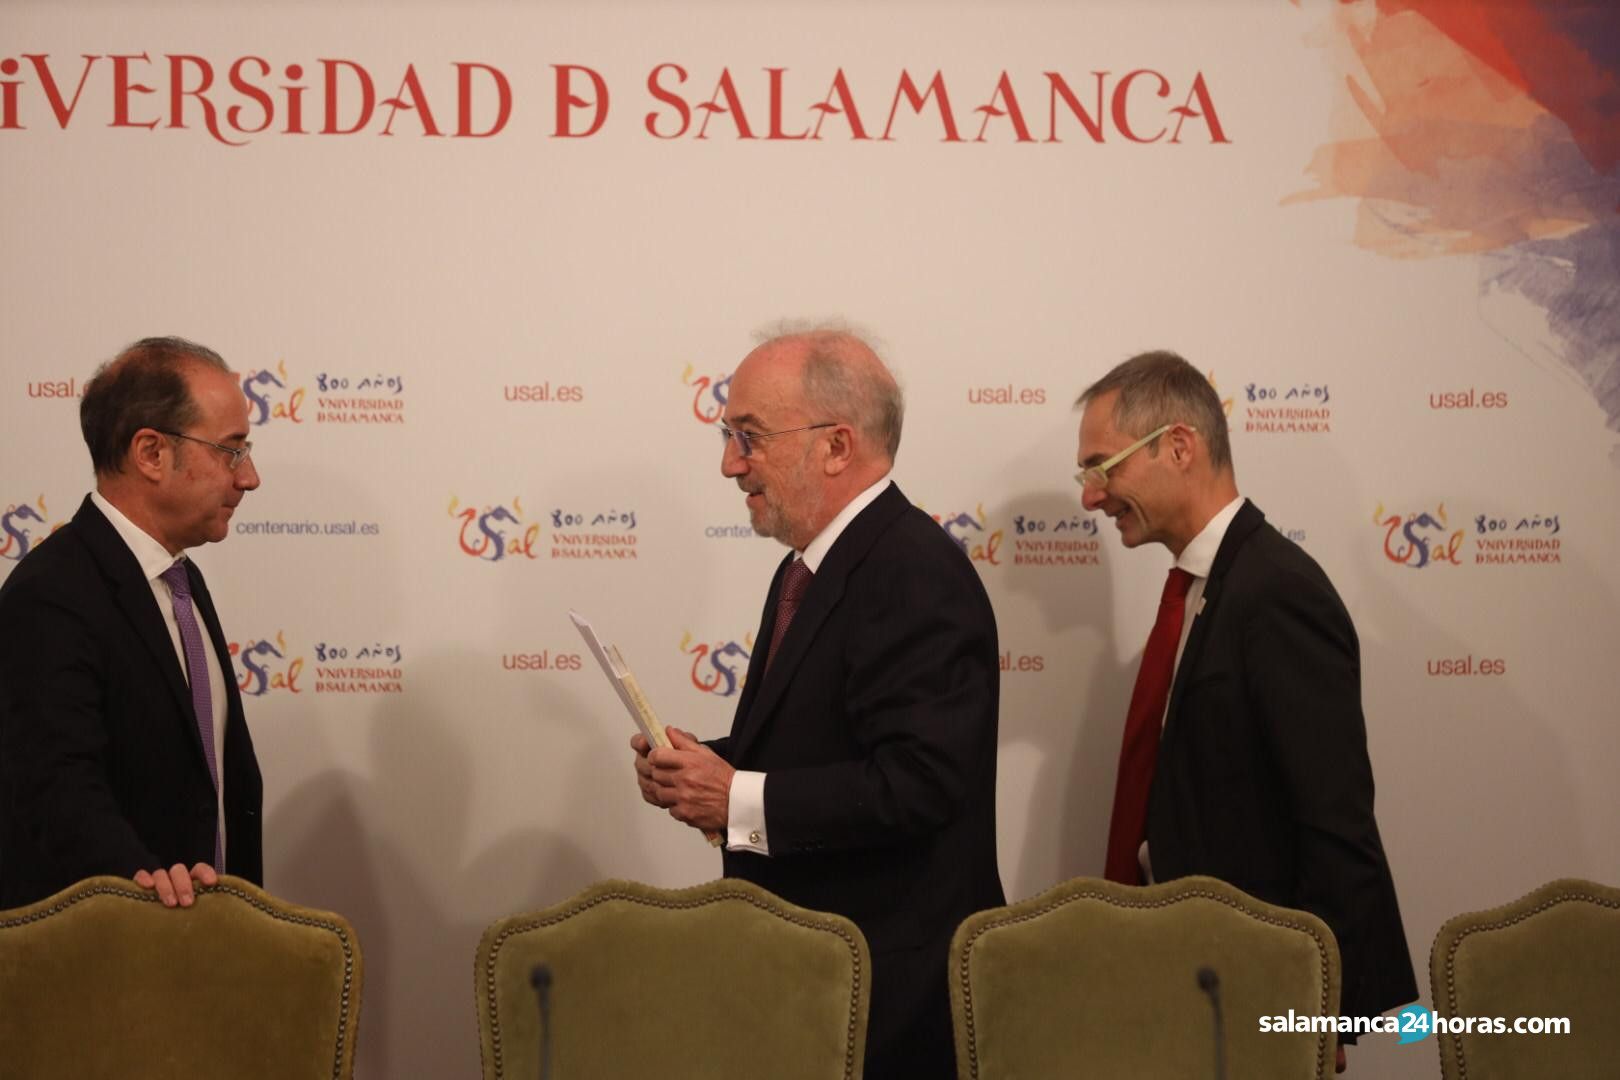  Rueda de prensa de Santiago Muñoz Machado antes de ser investido doctor honoris causa 4 